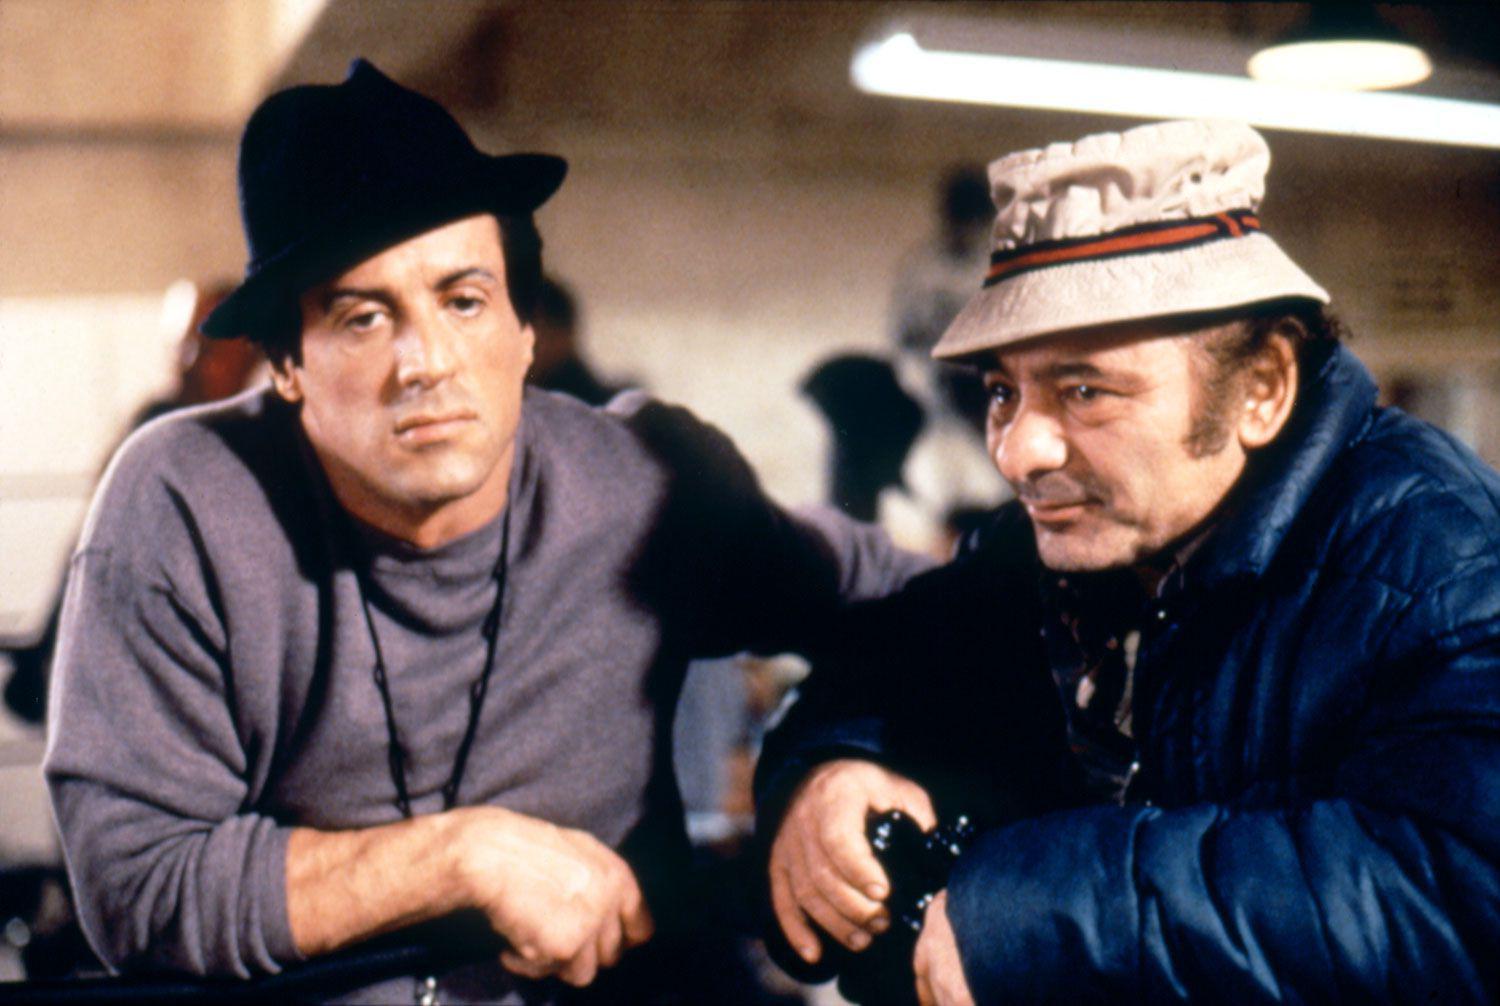 Morre Burt Young, ator indicado ao Oscar por viver Paulie em 'Rocky', aos 83 - Divulgação/MGM/United Artists